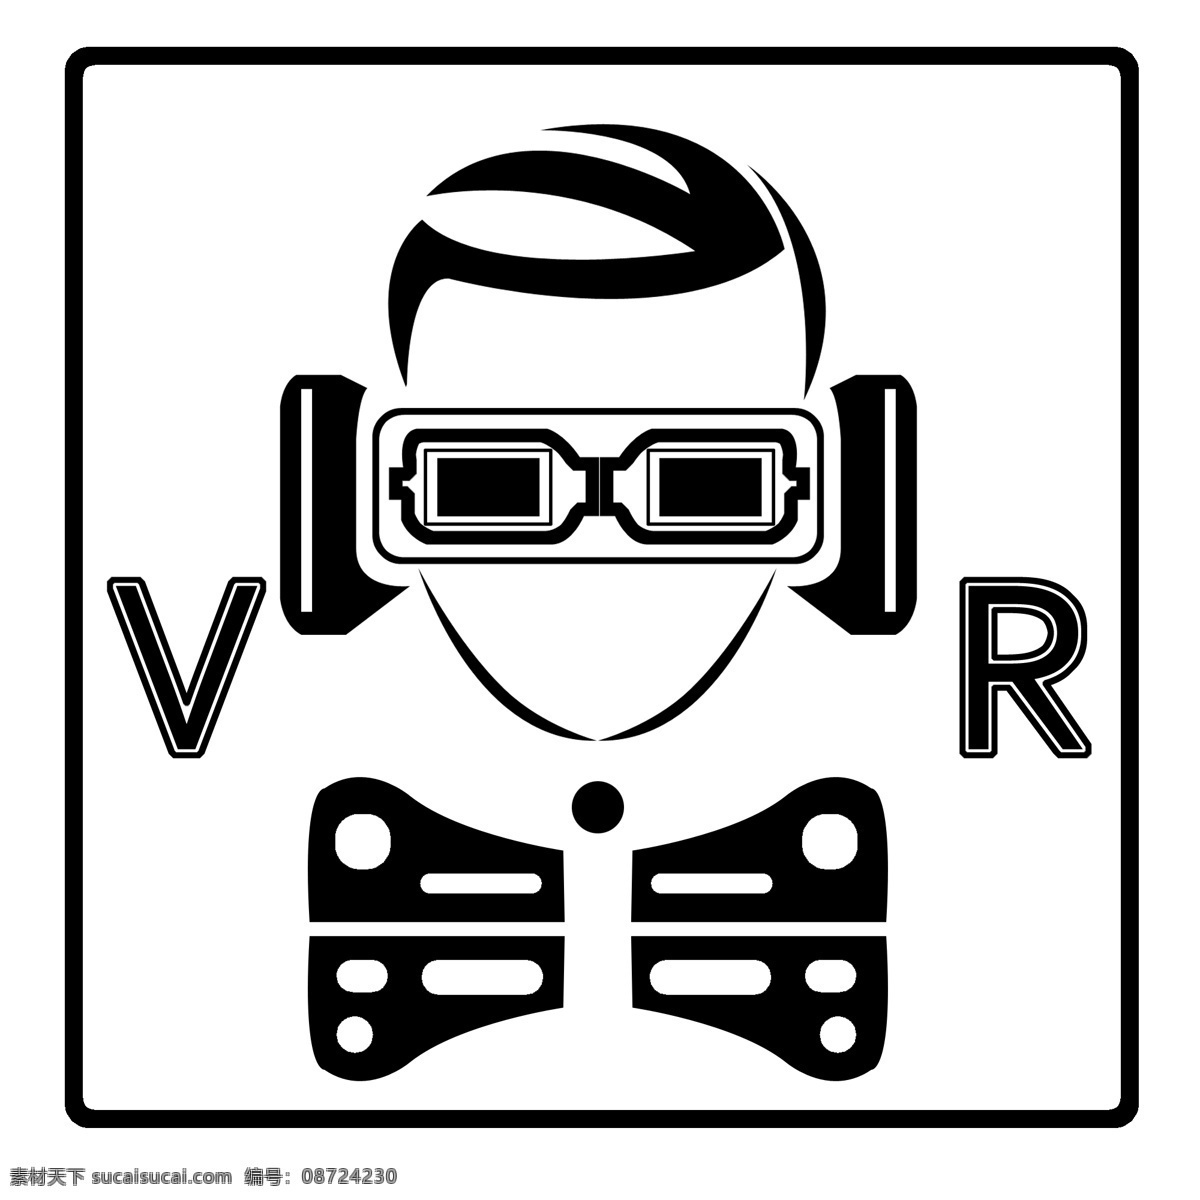 创意 科技 vr 体验 室 vr体验室 眼镜 人物 时尚眼镜 电子科 现代眼镜 3d眼镜 图标 方框